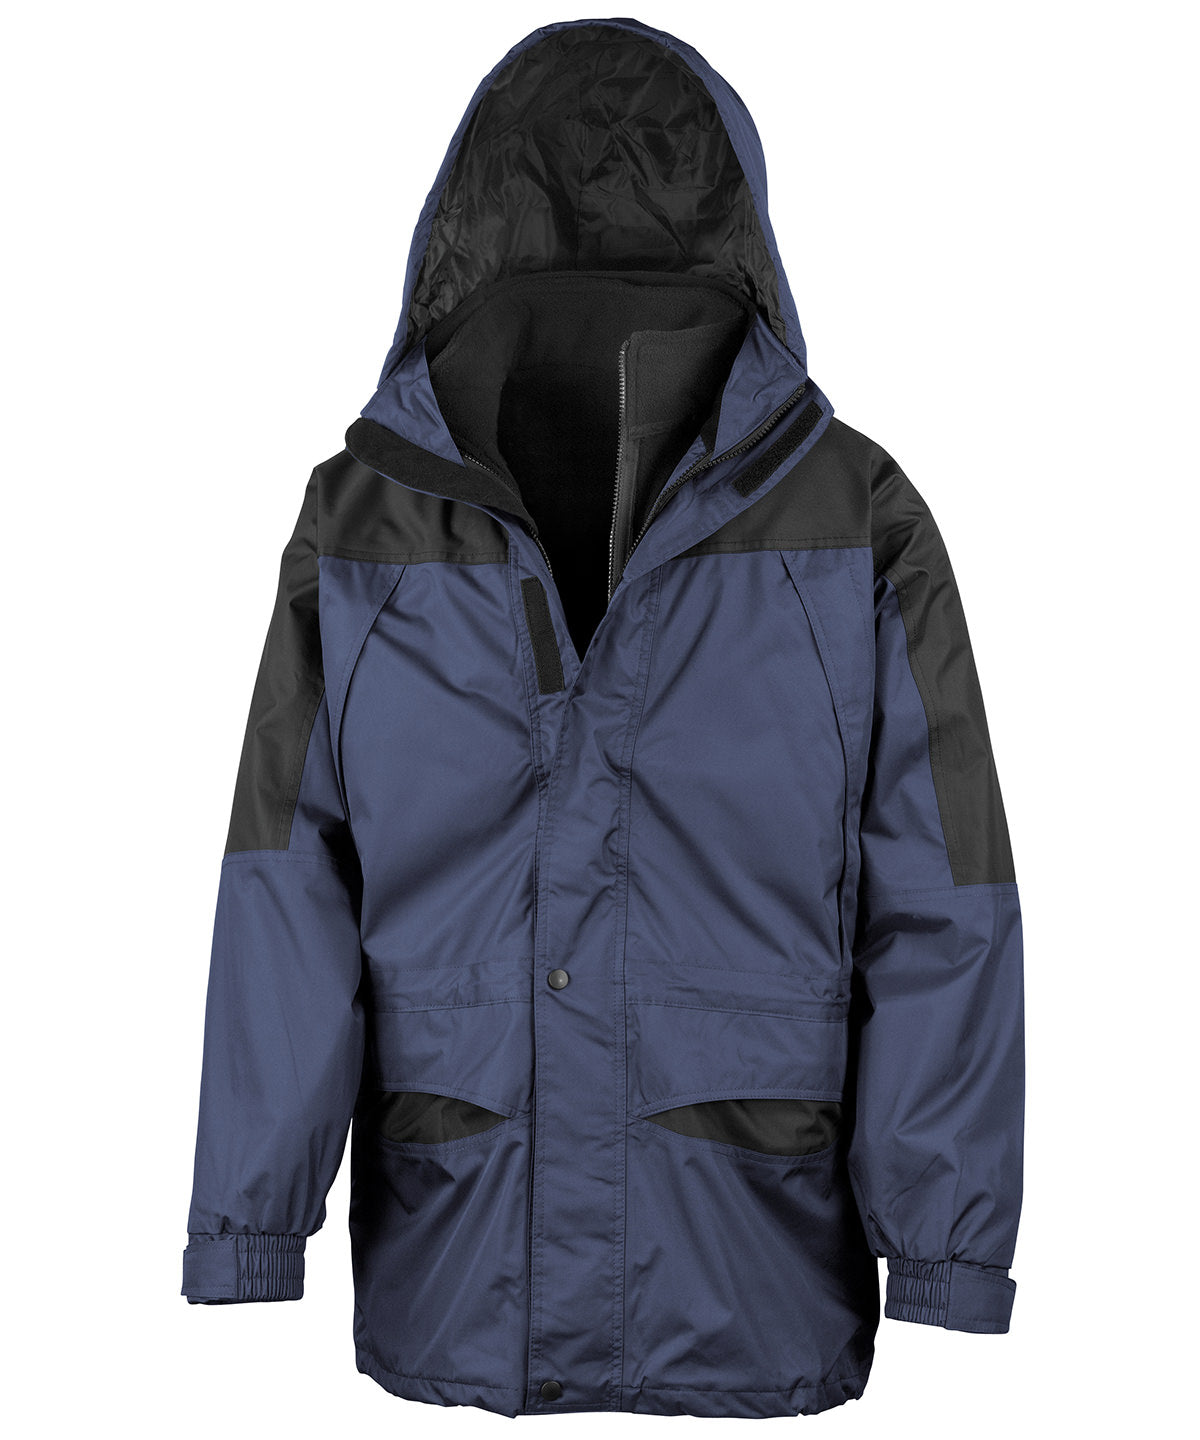 Alaska 3-in-1 jacket